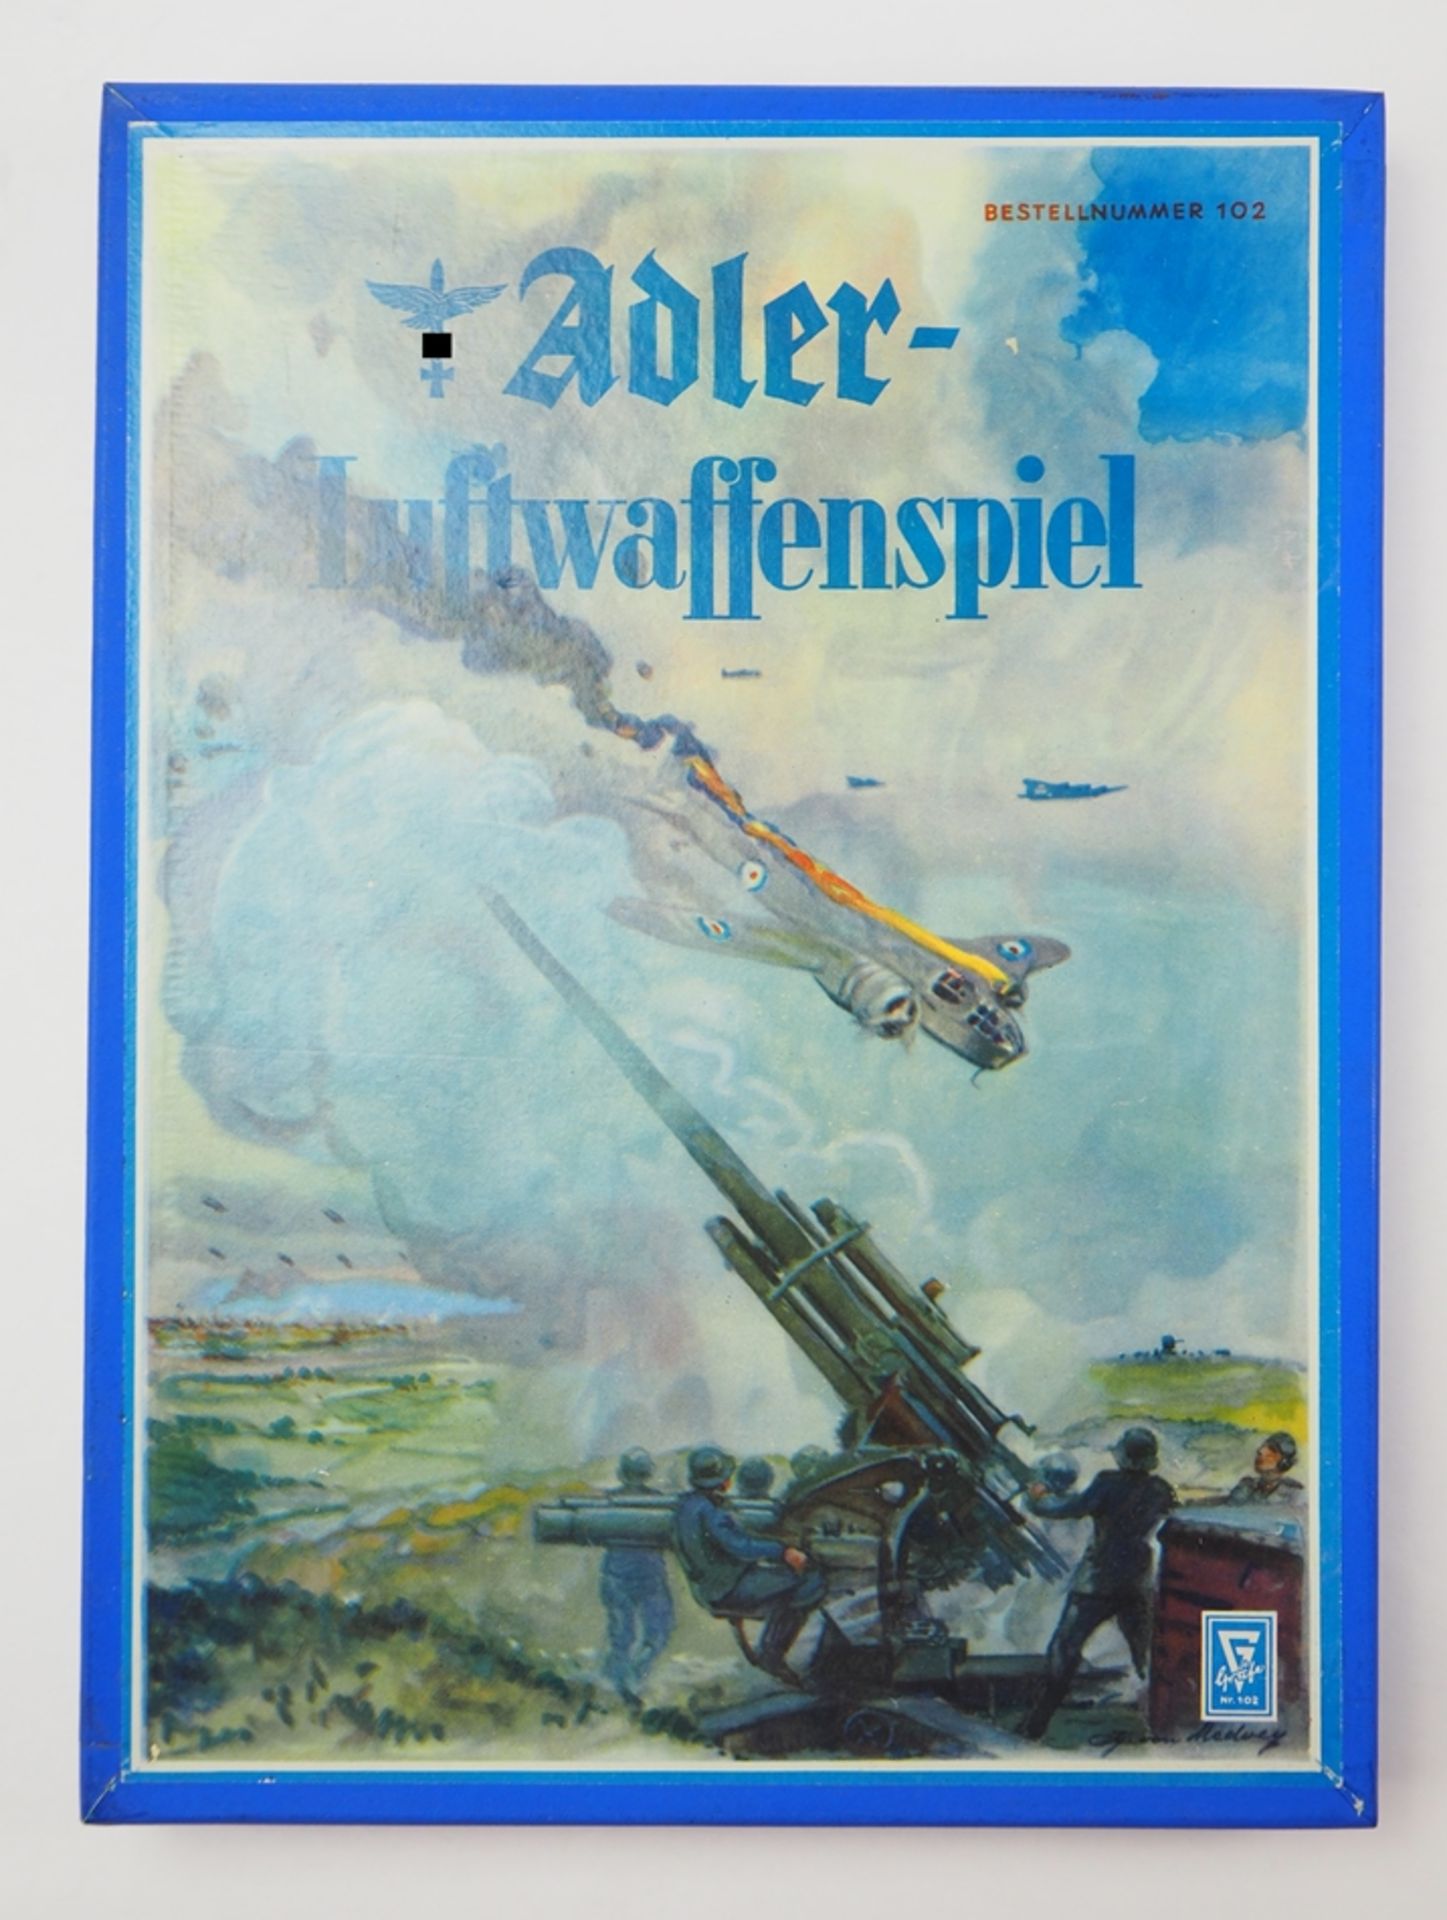 Adler Luftwaffenspiel.